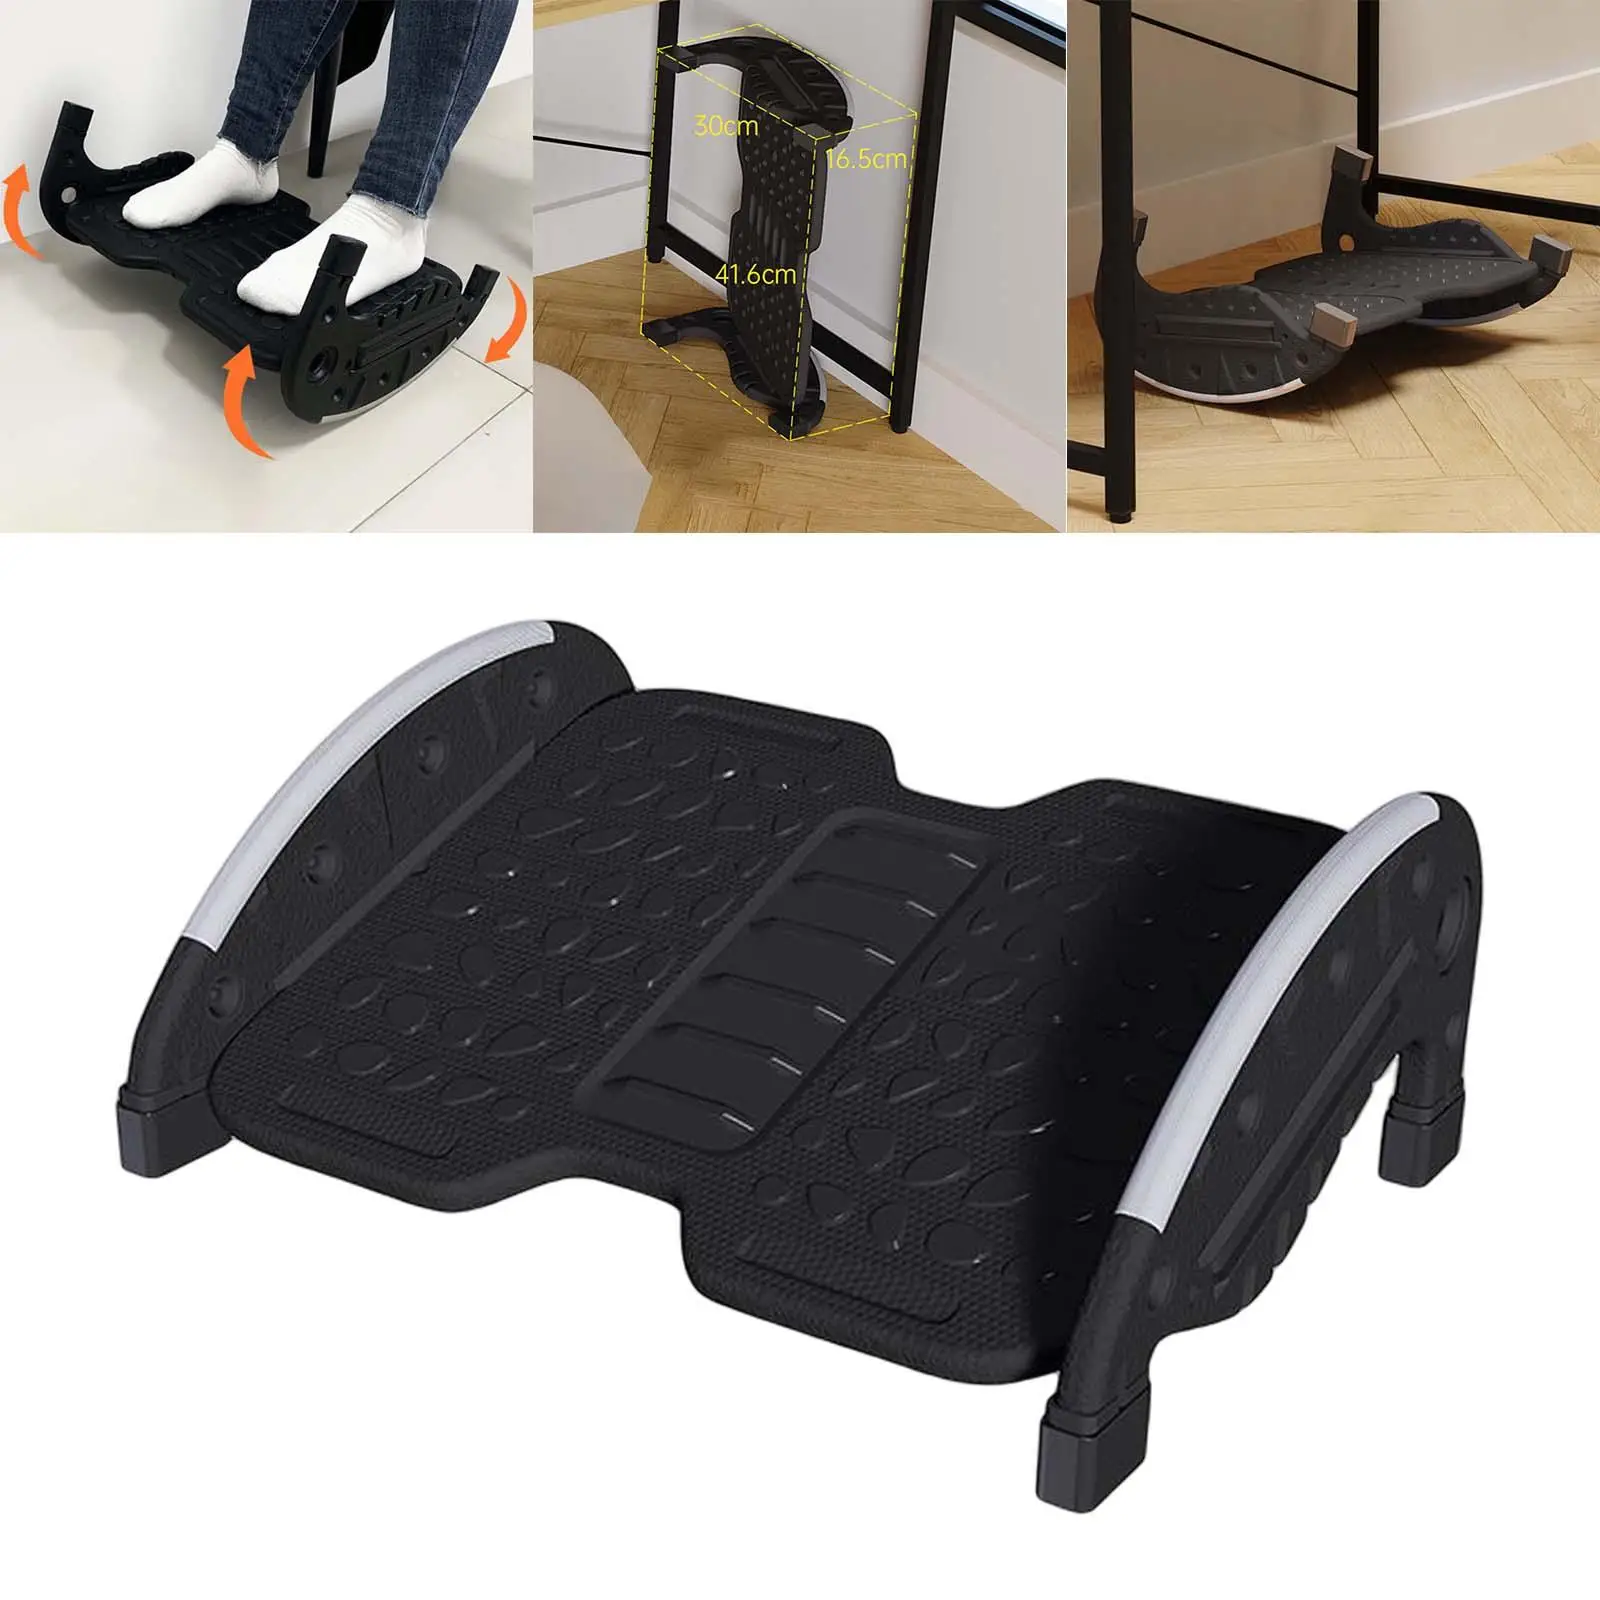 Черная подставка для ног под стол с динамическим и статическим переключением, легкая установка, способствующая кровообращению в ногах, отстегивающаяся, с антискользящей поверхностью для использования.